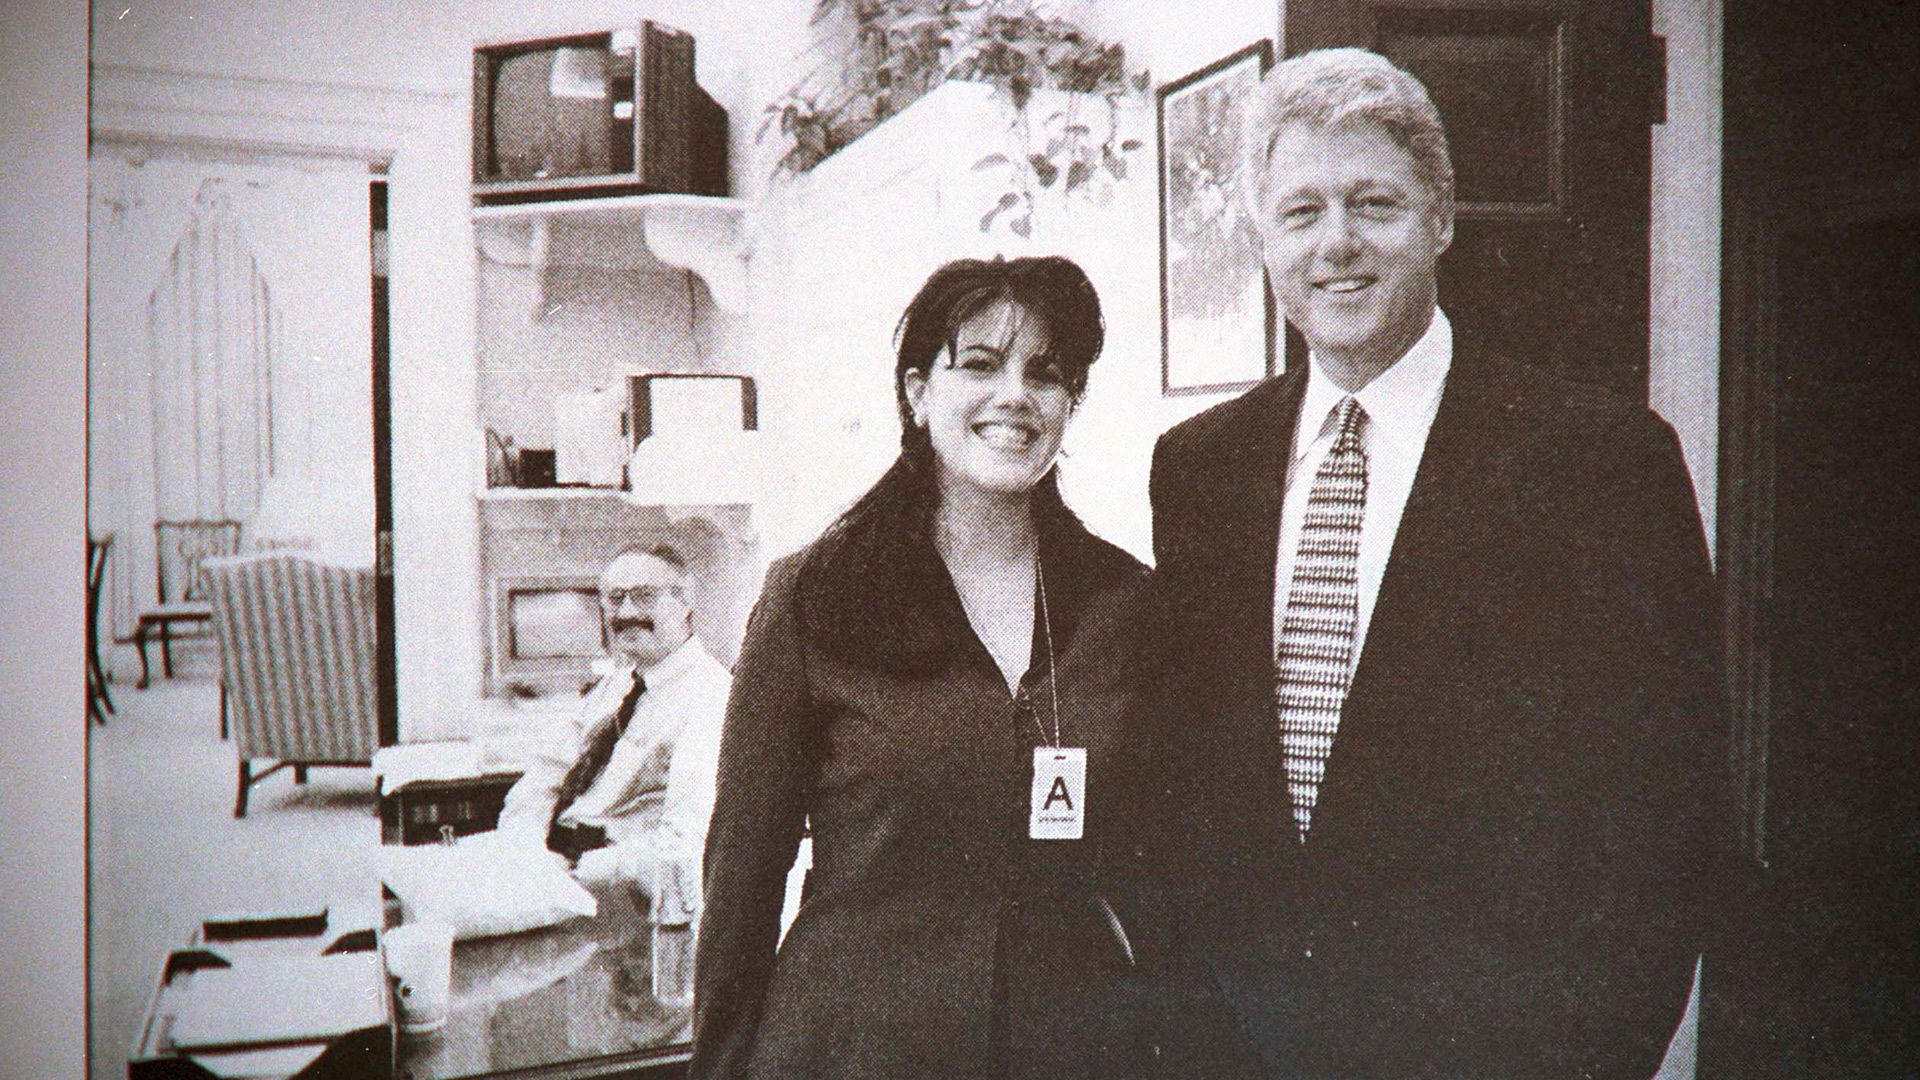 Bill Clinton junto a Monica Lewinsky, quien ingresó en 1995 a trabajar en la Casa Blanca como becaria (Globe Photos/Mediapunch/Shutterstock)